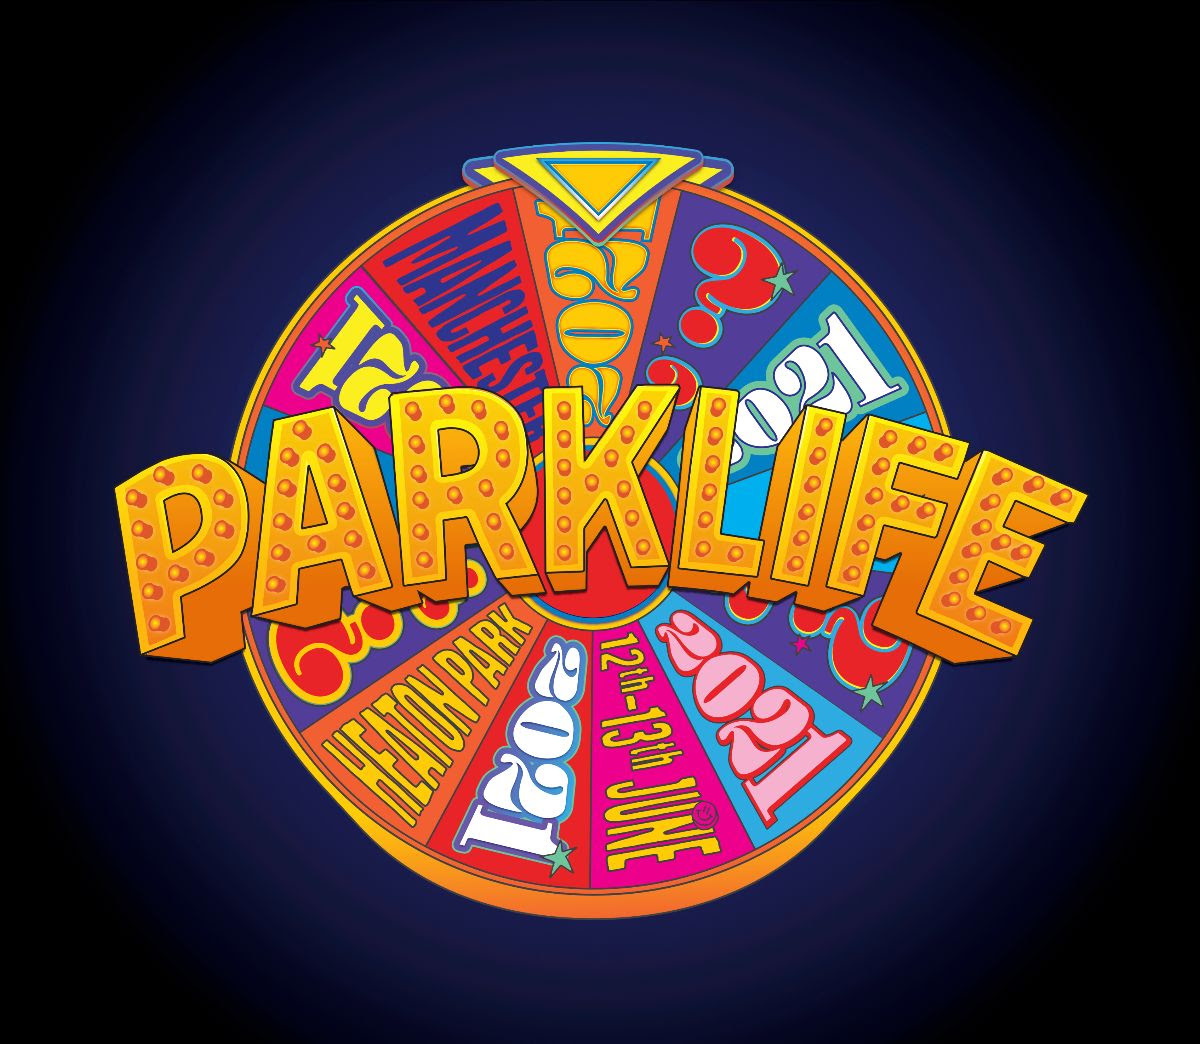 Parklife festival 2021 logo